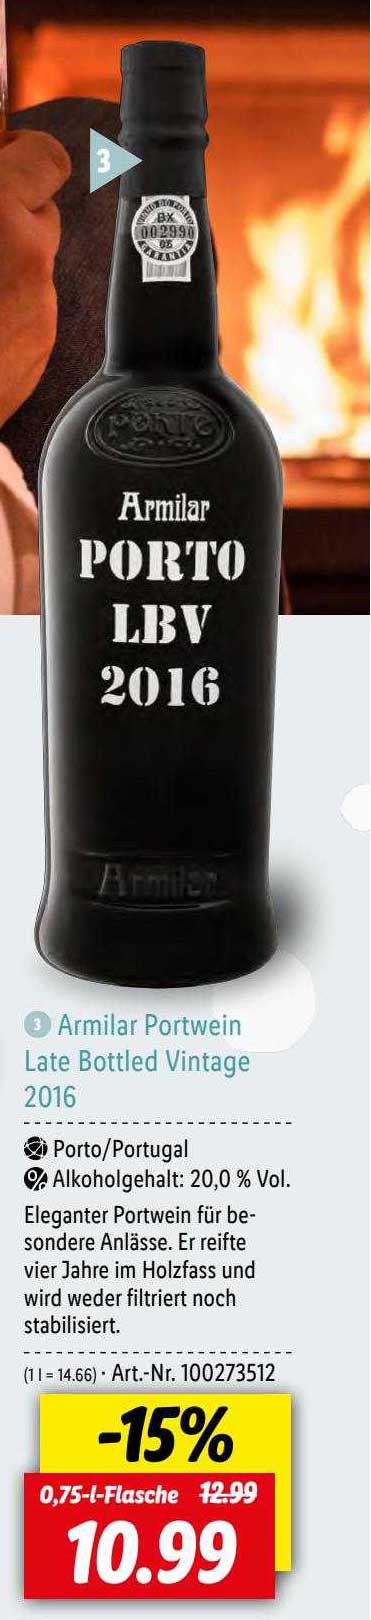 Bottled 2016 Late Vintage Armilar Lidl Portwein Angebot bei